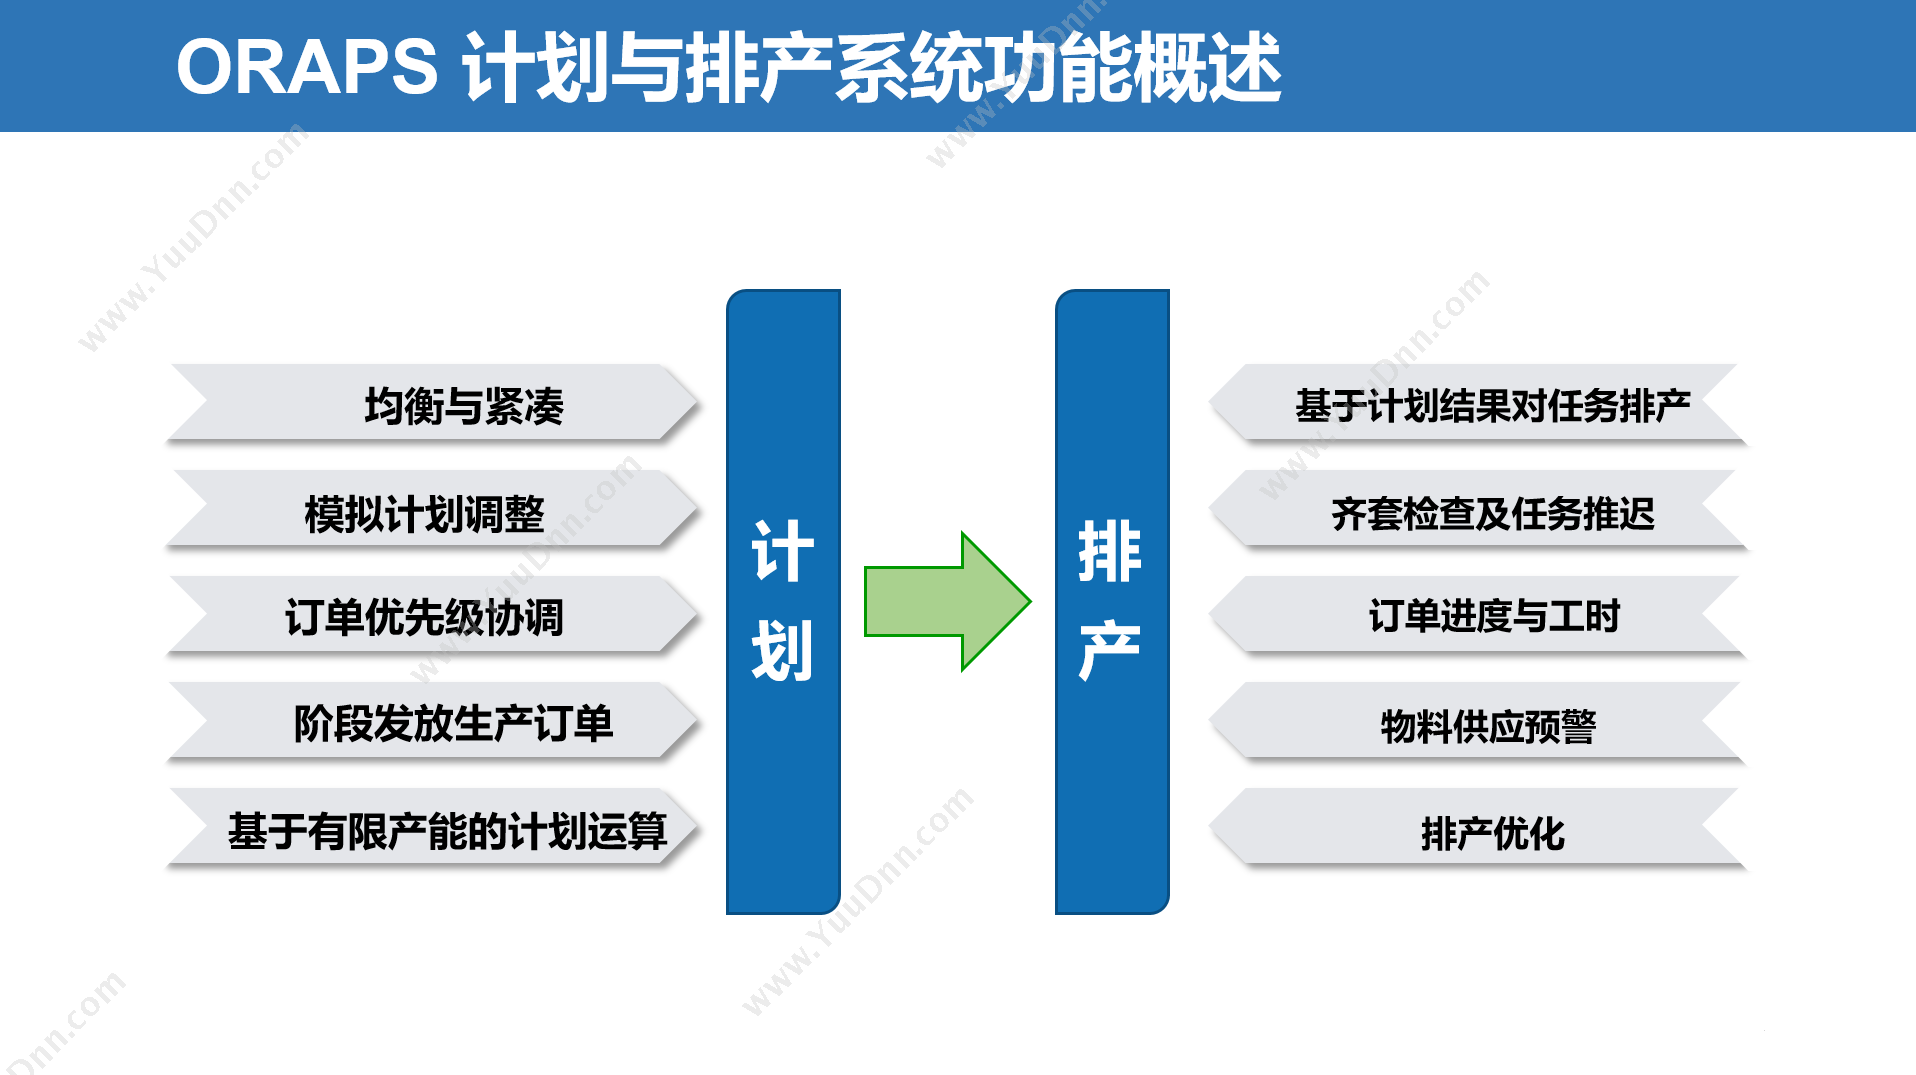 上海不工软件有限公司 不工ORAPS高级生产计划与排程系统 排程与调度